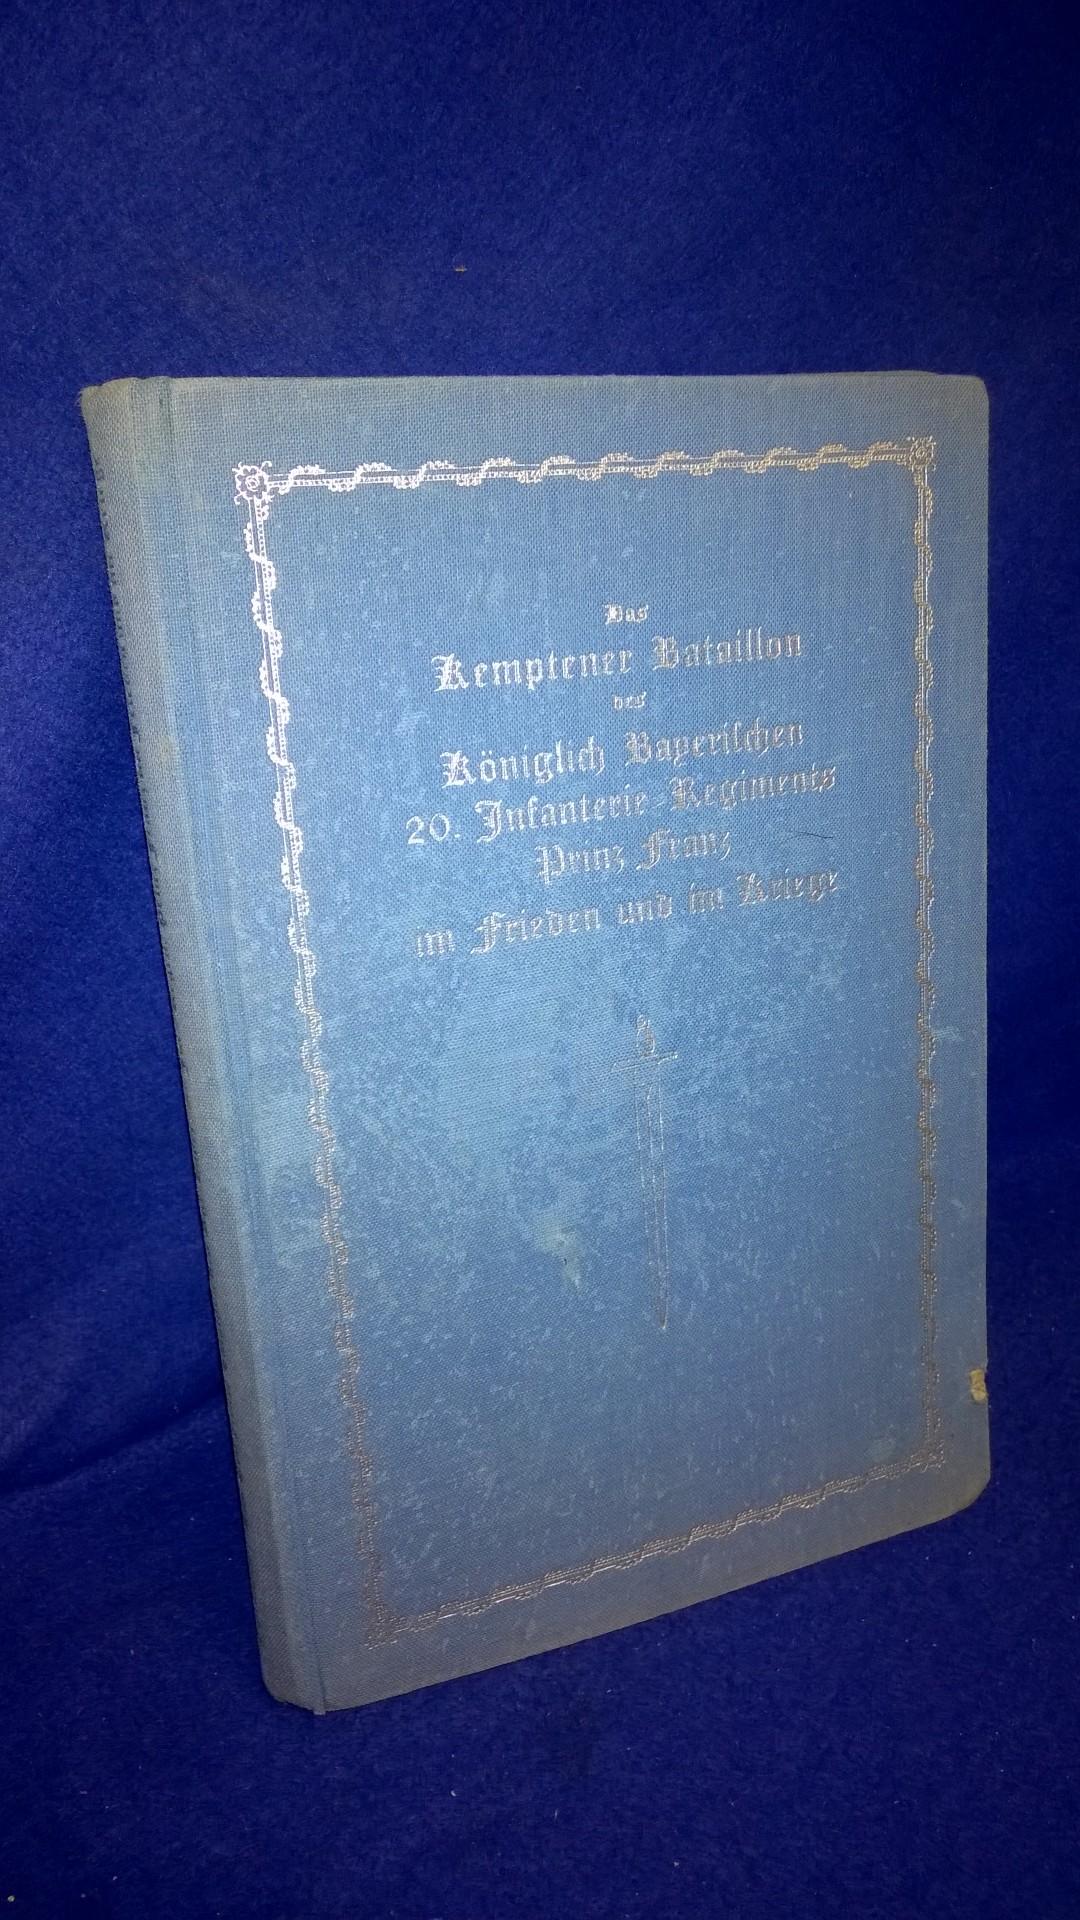 Das Kemptener Bataillon des Königlich Bayerischen 20. Infanterie-Regiments Prinz Franz im Frieden und im Kriege.